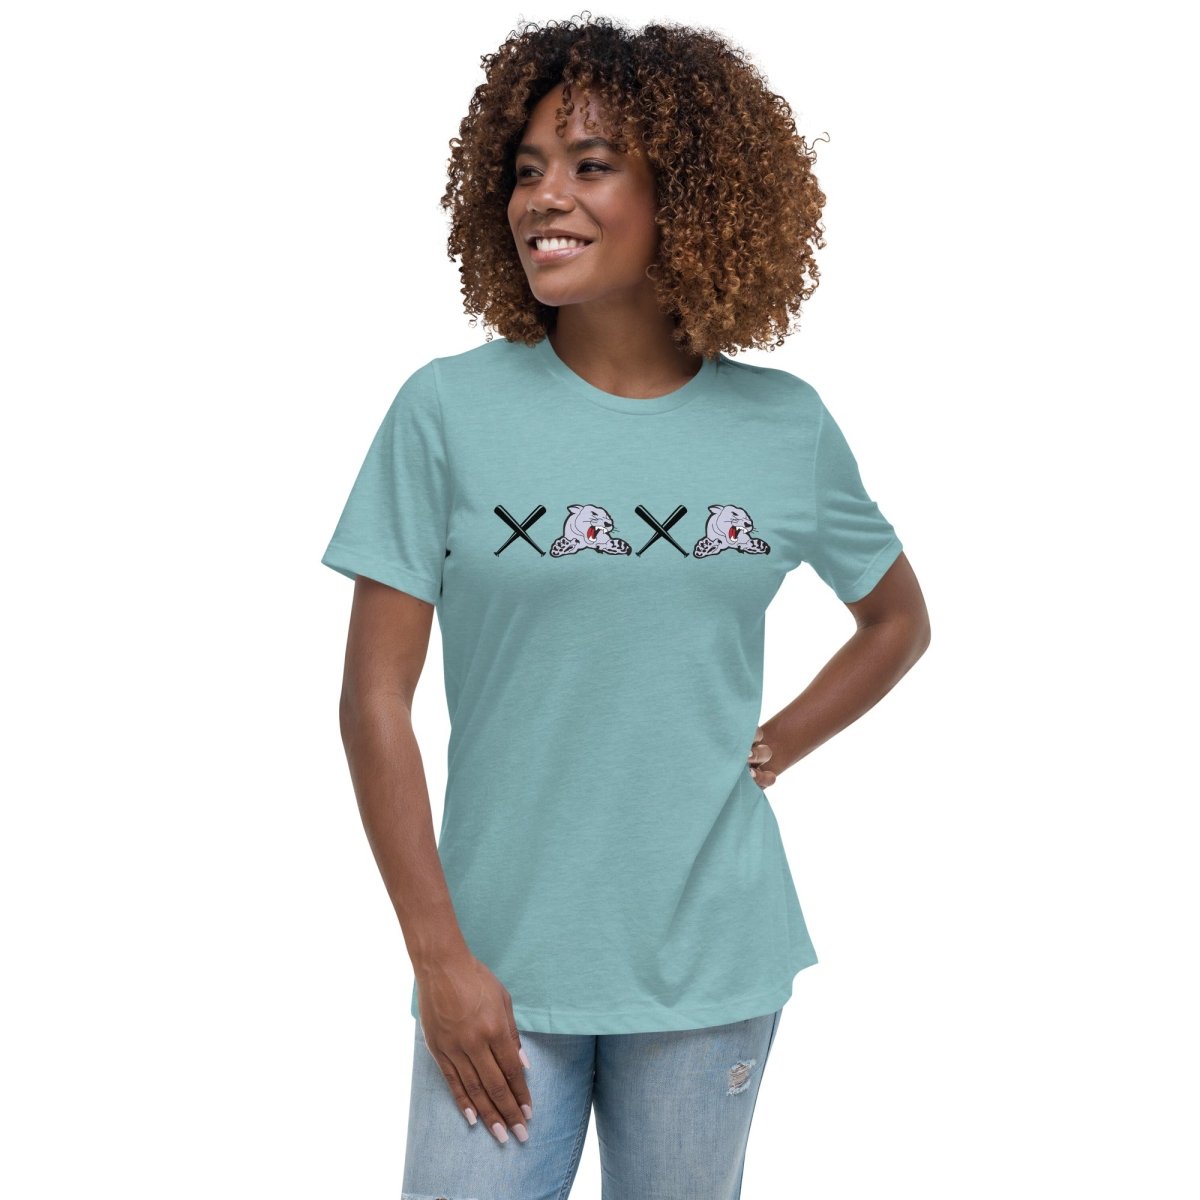 XOXO Women's Relaxed T-Shirt